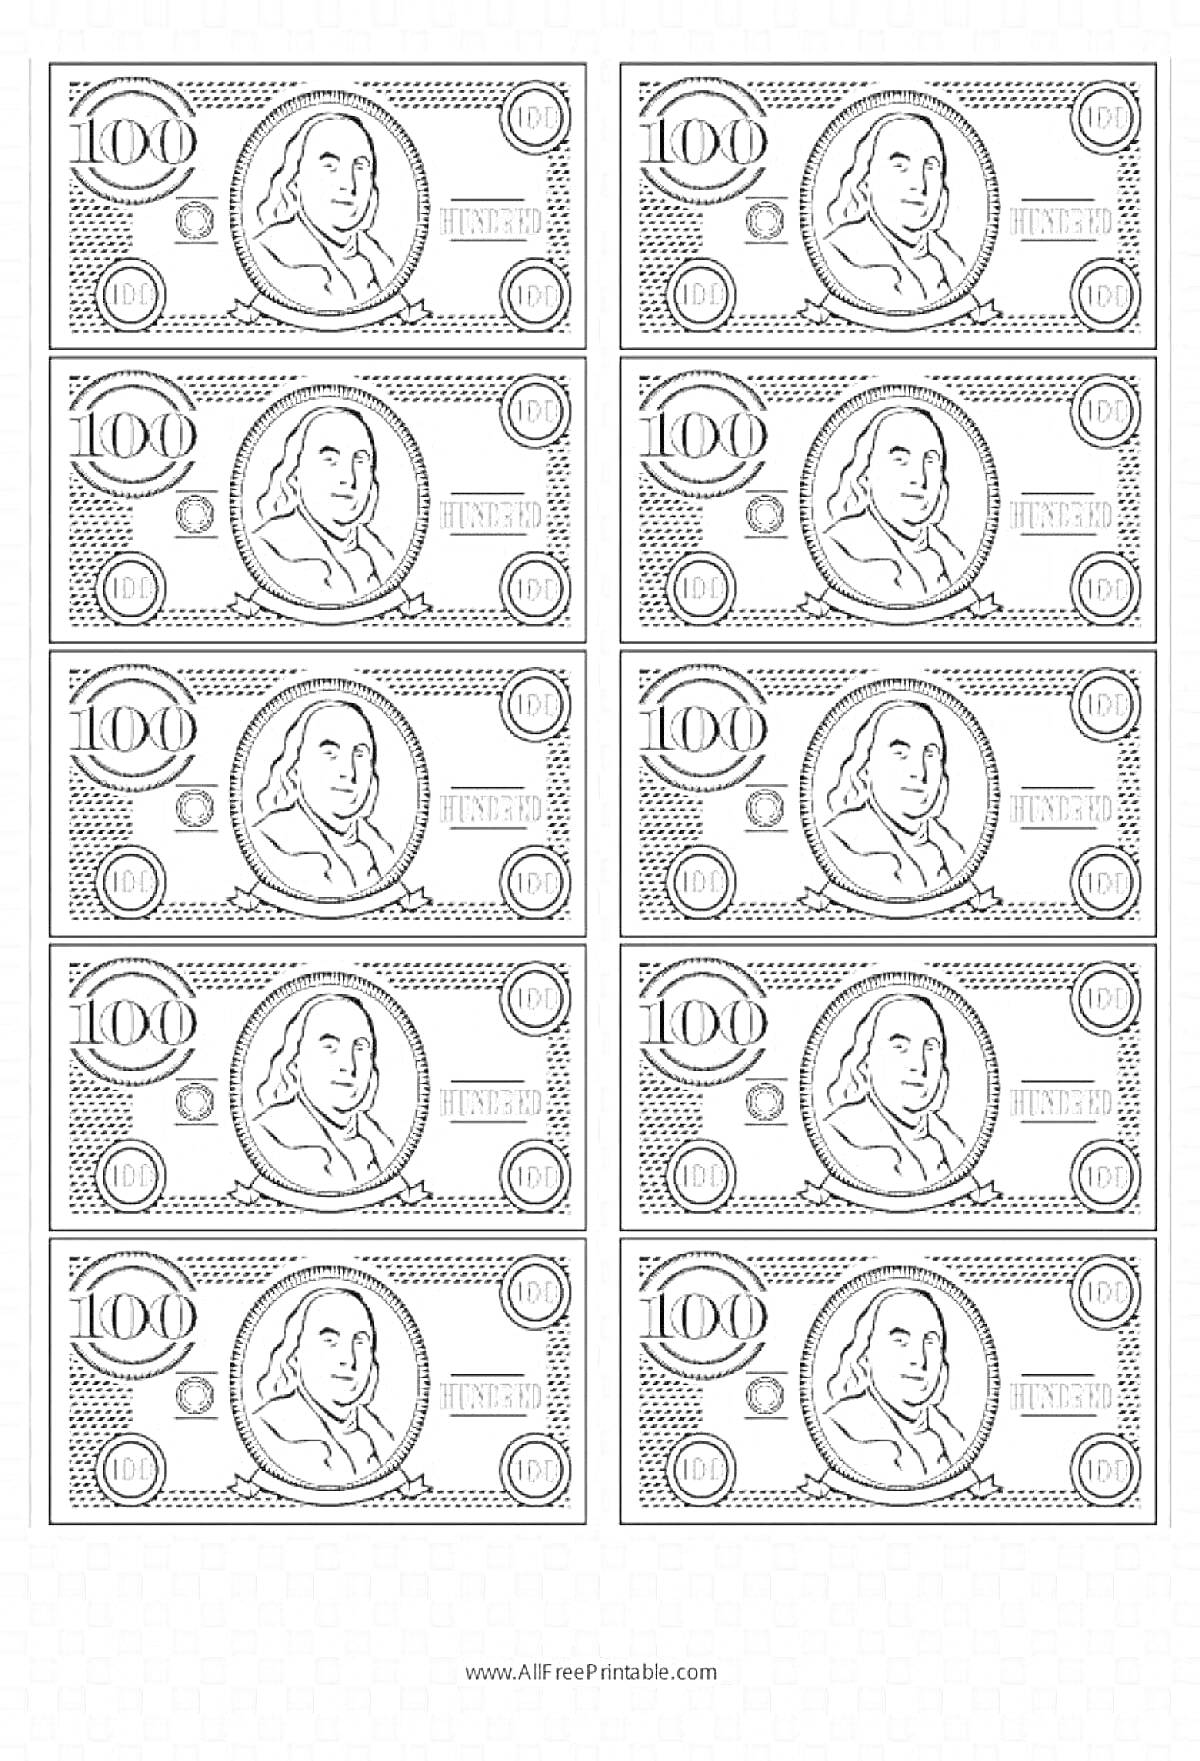 Раскраска Раскраска с изображением 10 банкнот по 100 долларов США с портретом мужчины, цифрами и символами